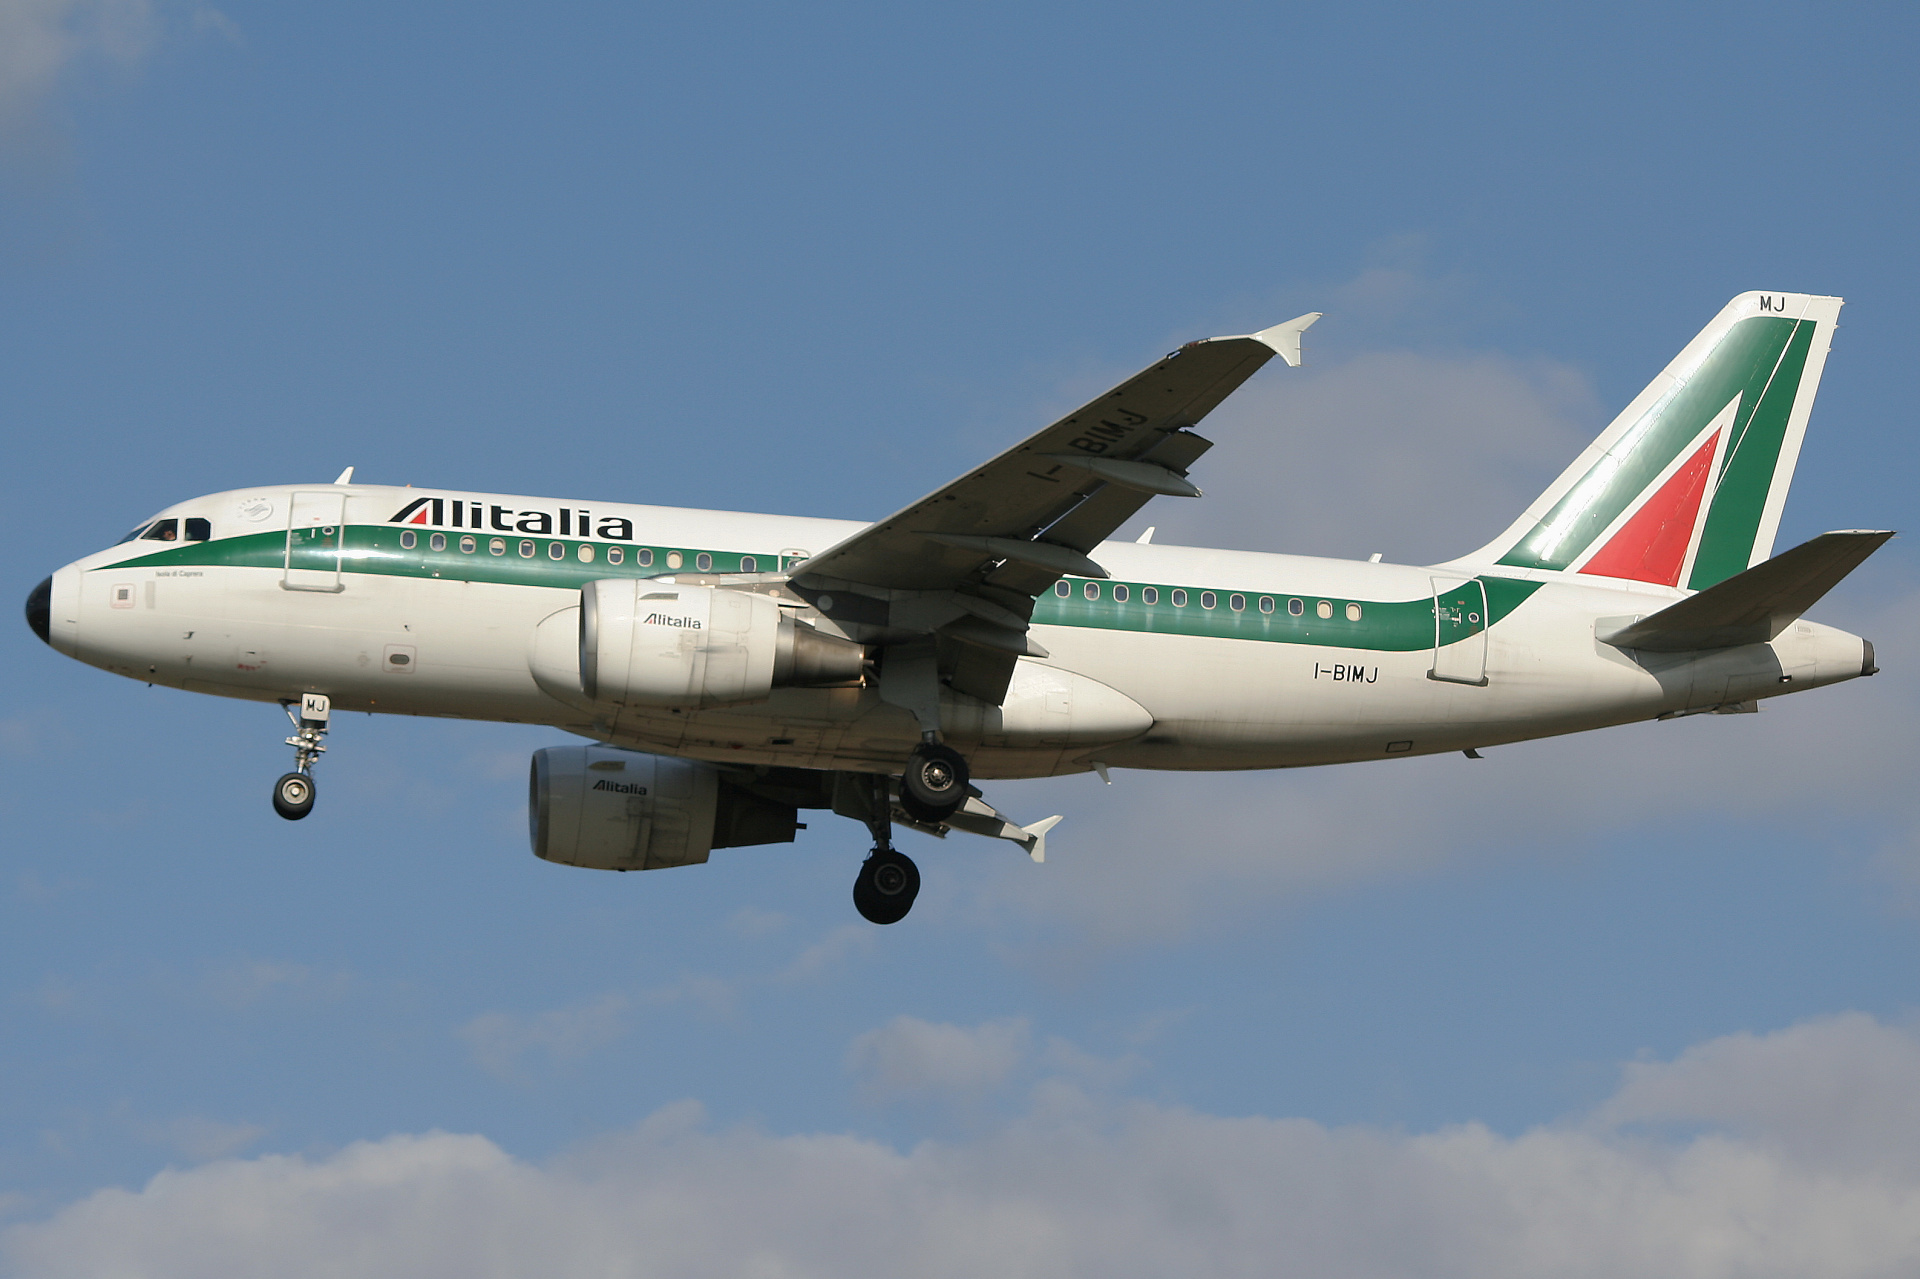 I-BIMJ (Aircraft » EPWA Spotting » Airbus A319-100 » Alitalia)